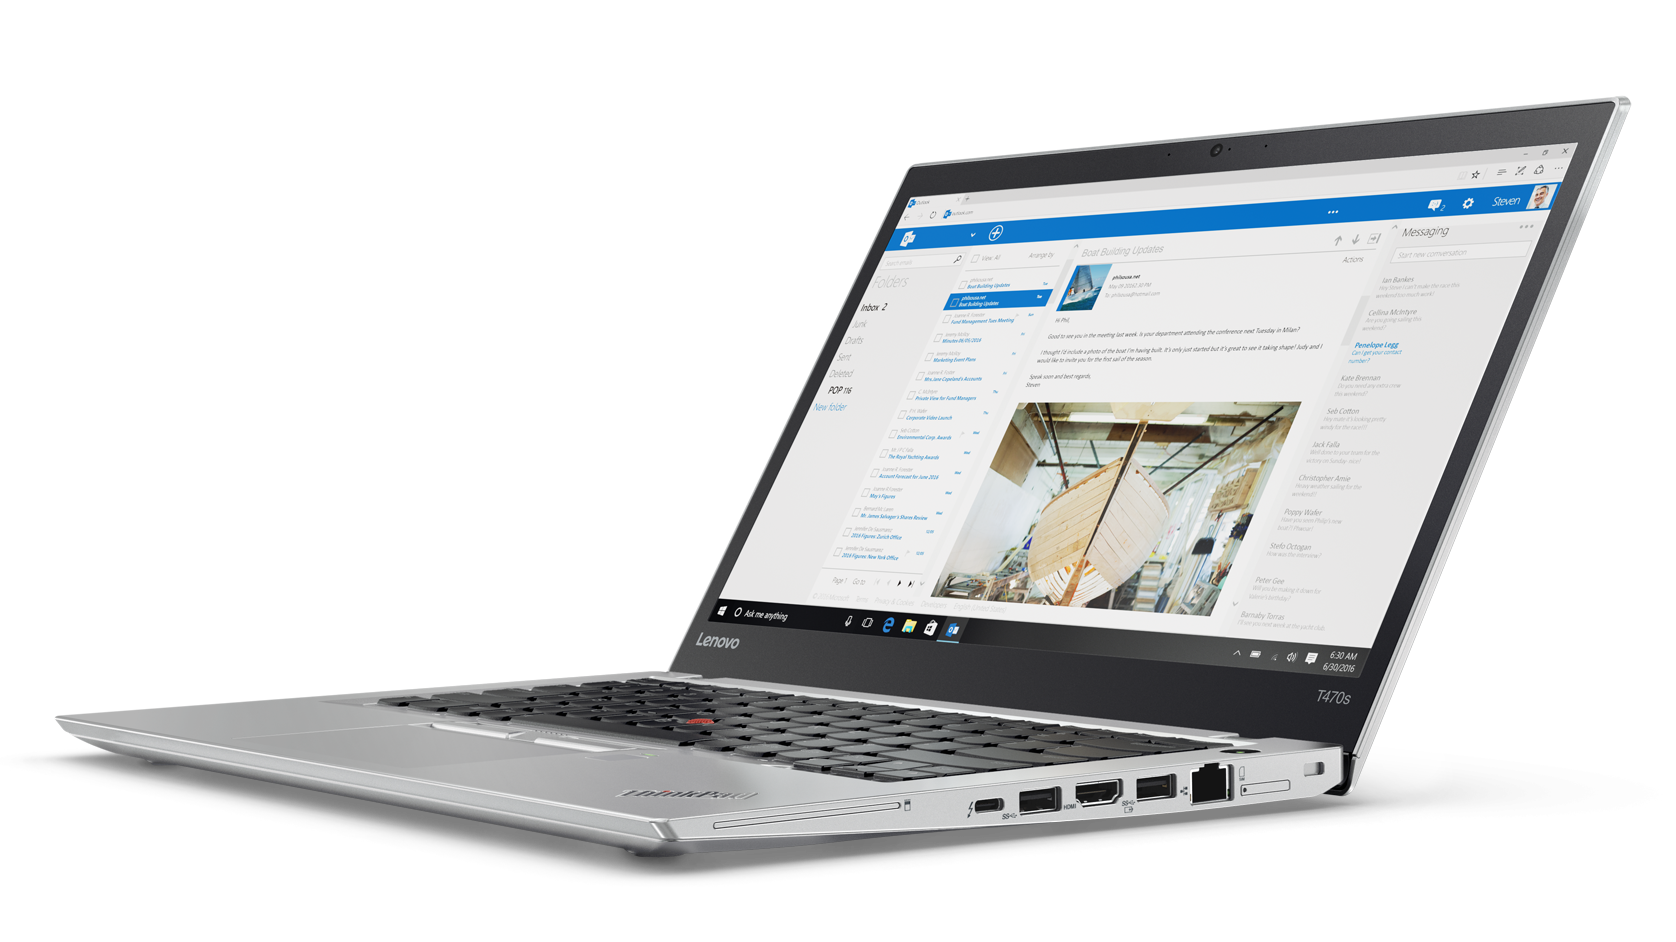 Immagine pubblicata in relazione al seguente contenuto: I nuovi portatili Lenovo Thinkpad includeranno SSD con tecnologia Intel Optane | Nome immagine: news25527_Lenovo-ThinkPad-2017_3.png